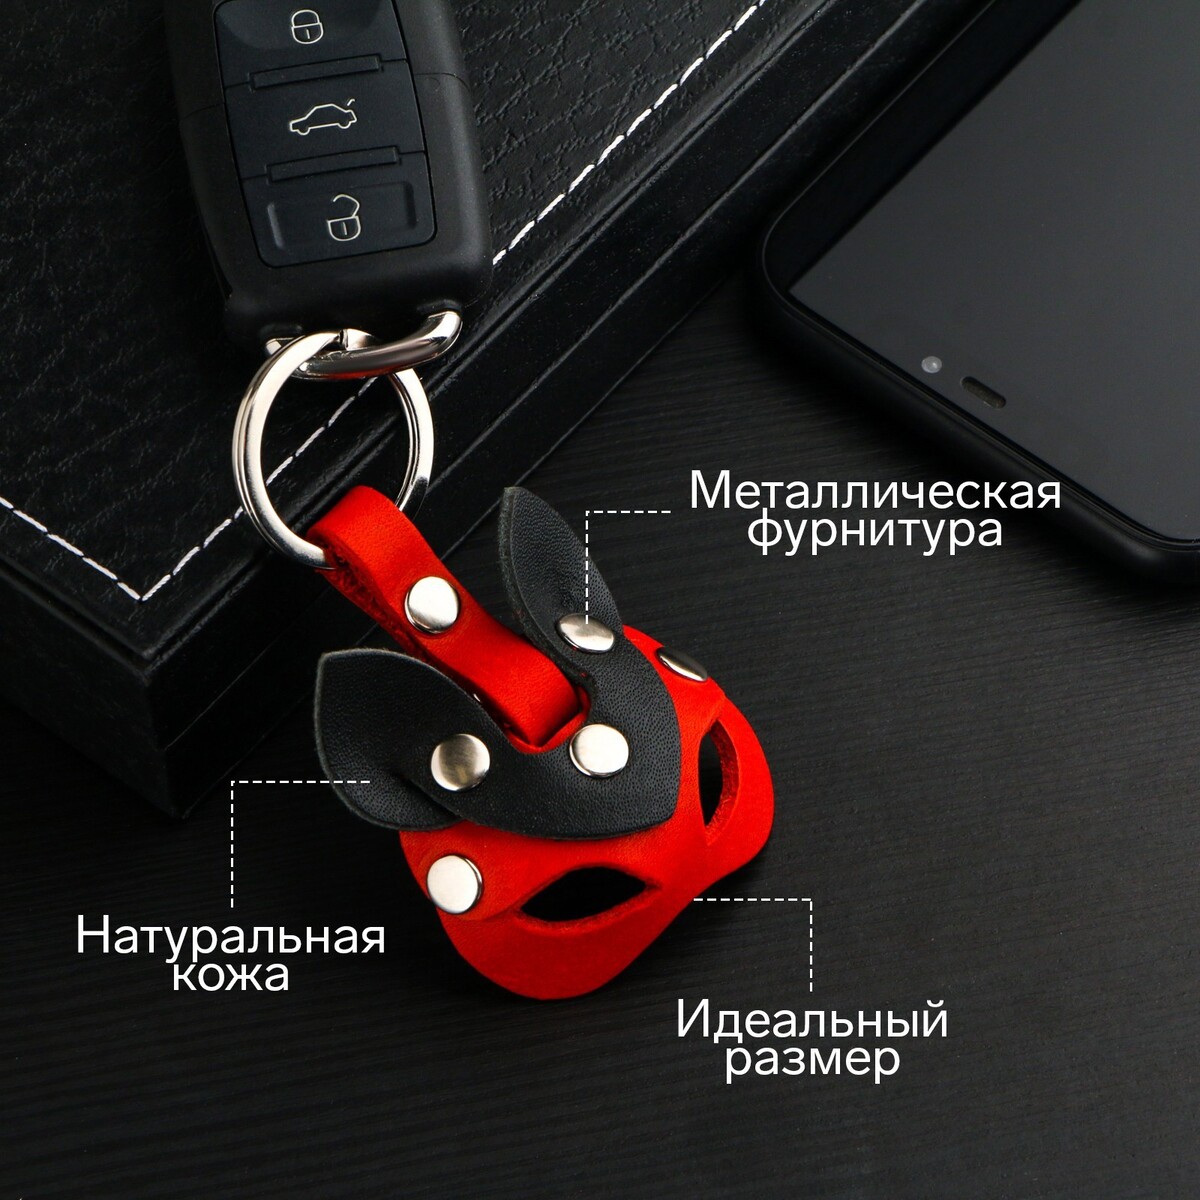 Брелок для автомобильного ключа, маска, натуральная кожа No brand, цвет красный 03157560 - фото 1